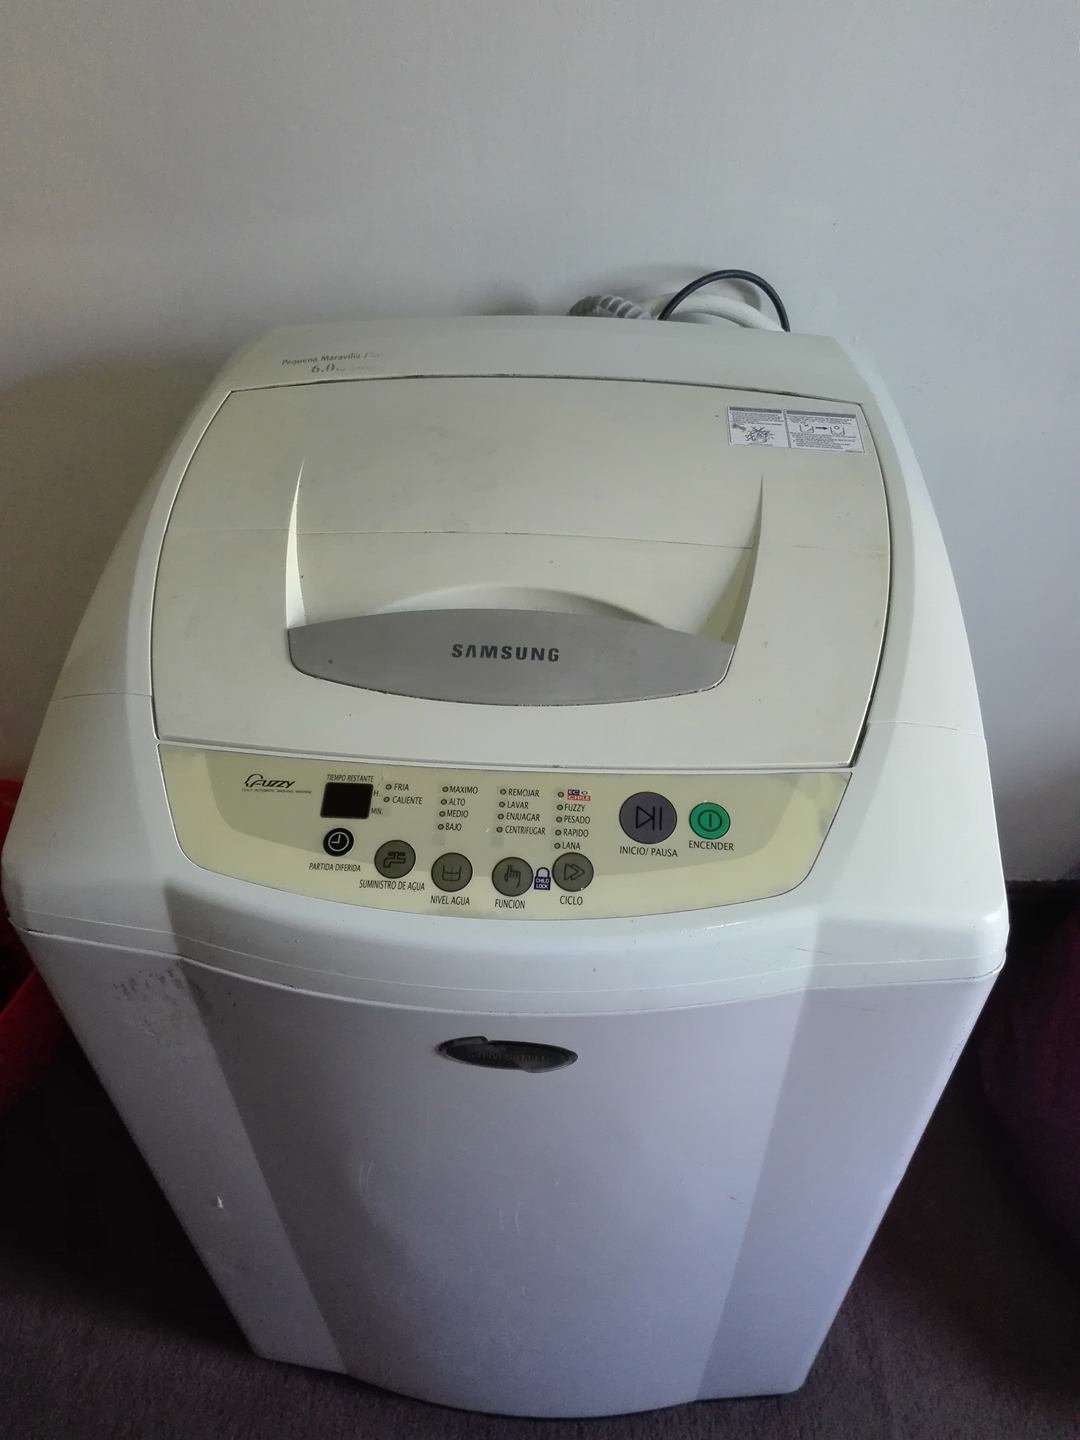 problema Canberra Perceptible Vendo lavadora samsung | Avisos Clasificados 2.0